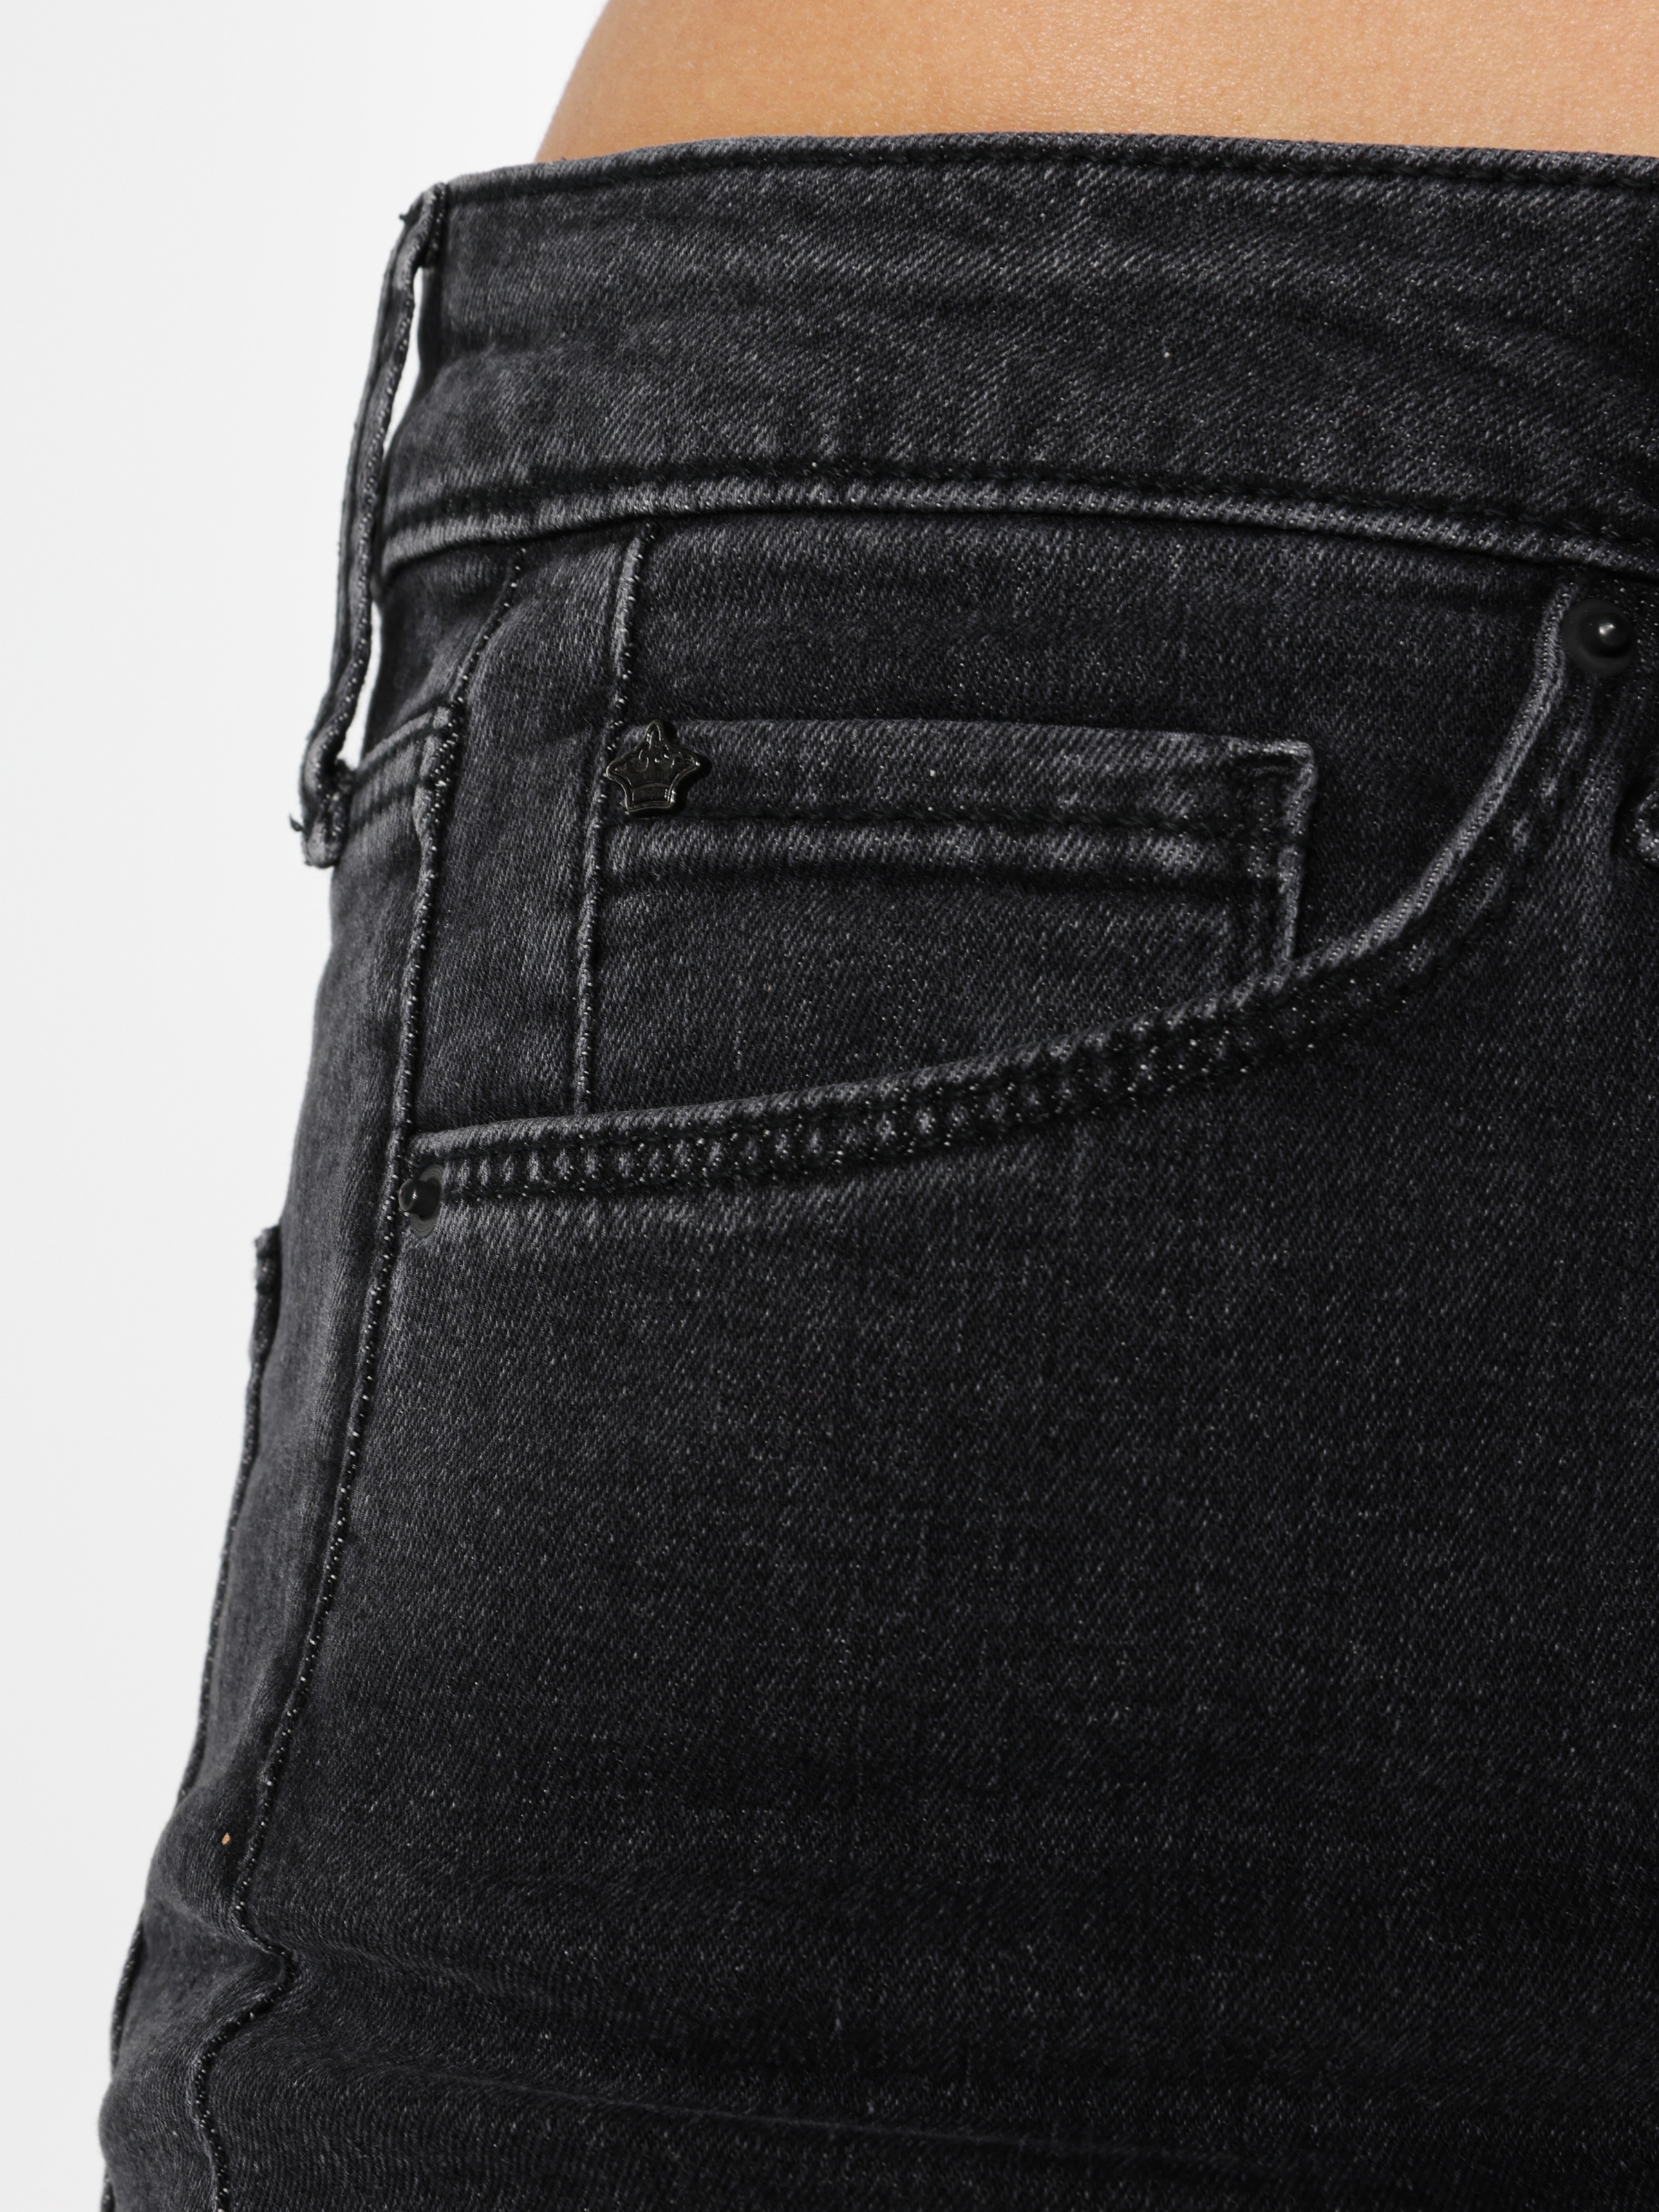 Afficher les détails de 791 Monica Regular Fit Taille Normale Pantalon En Jean Gris Pour Femme